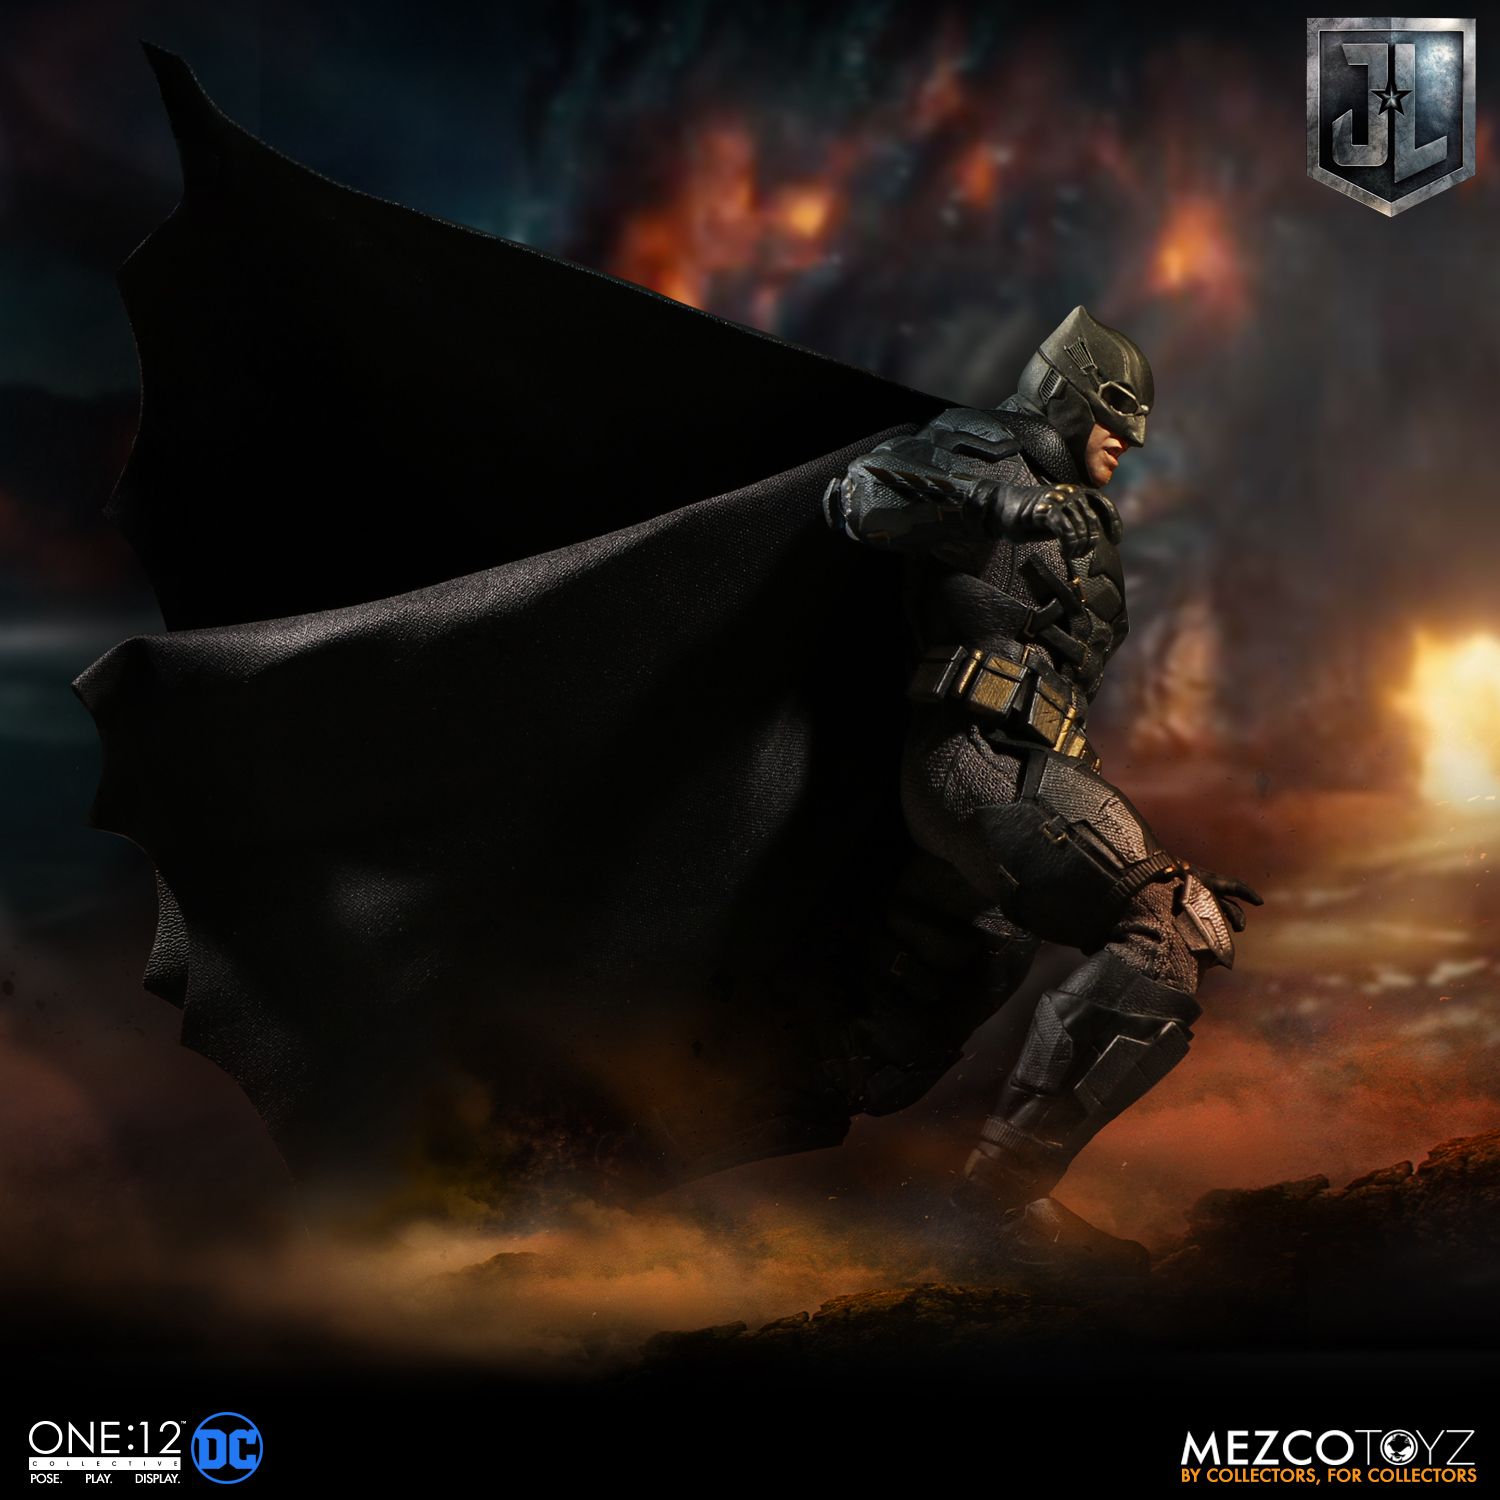 Mezco - One:12 Collective - Justice League - Tactical Suit Batman - Marvelous Toys